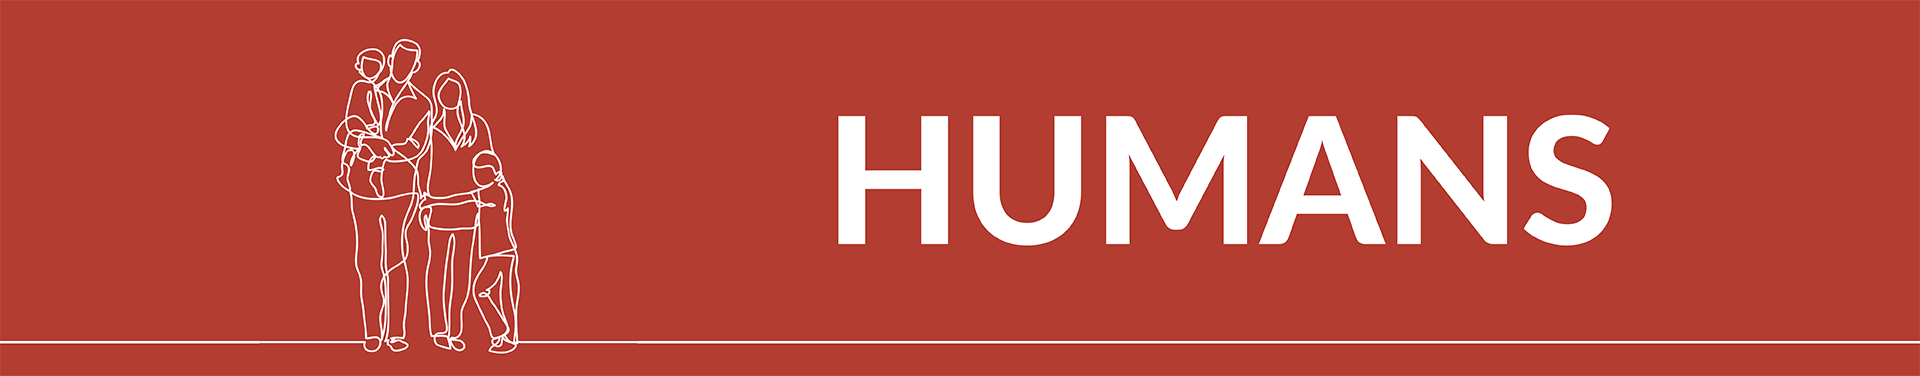 Human Banner